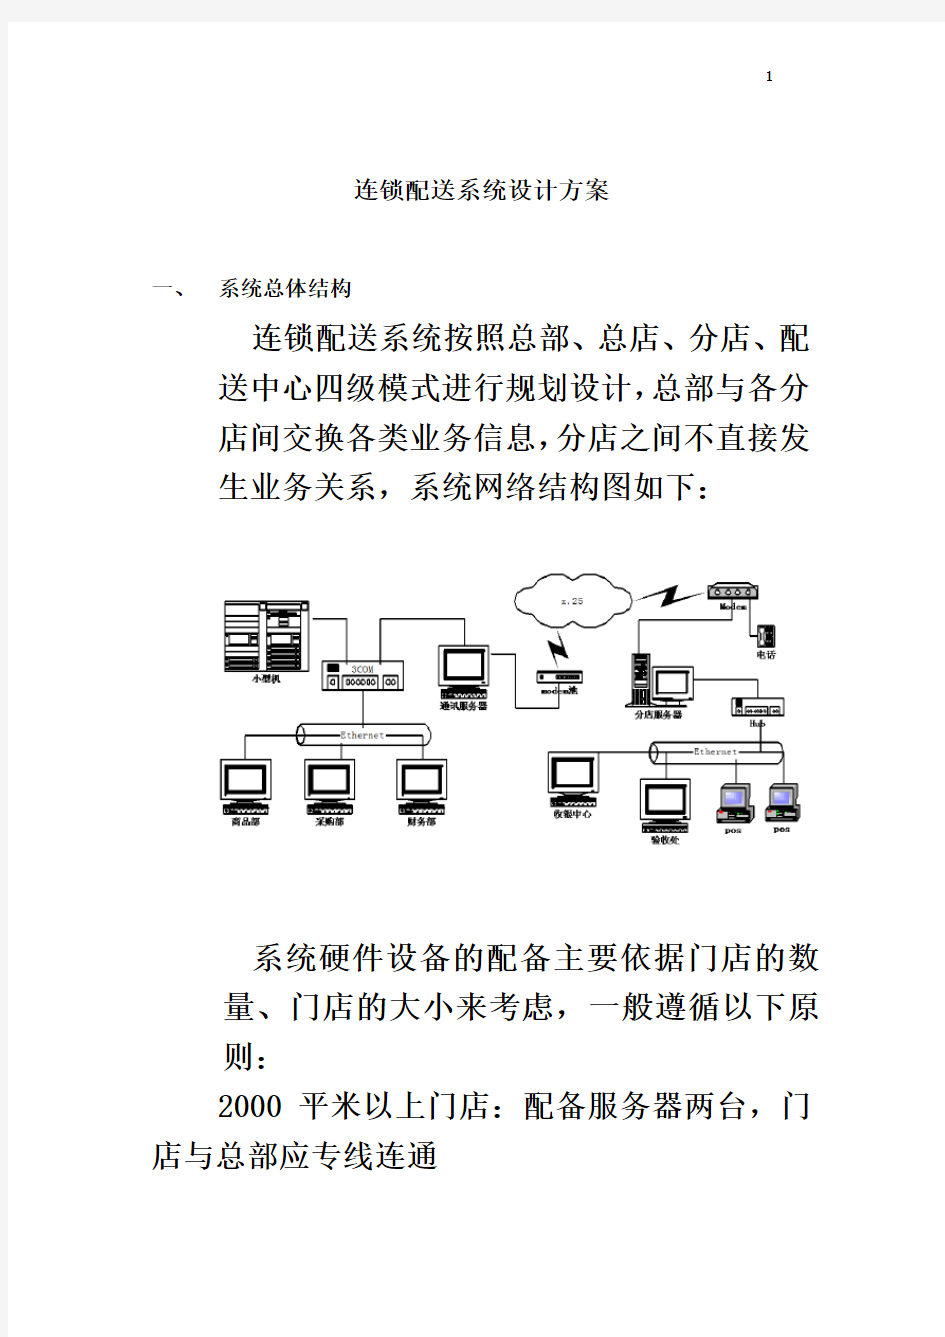 连锁配送系统设计方案(DOC 41页)